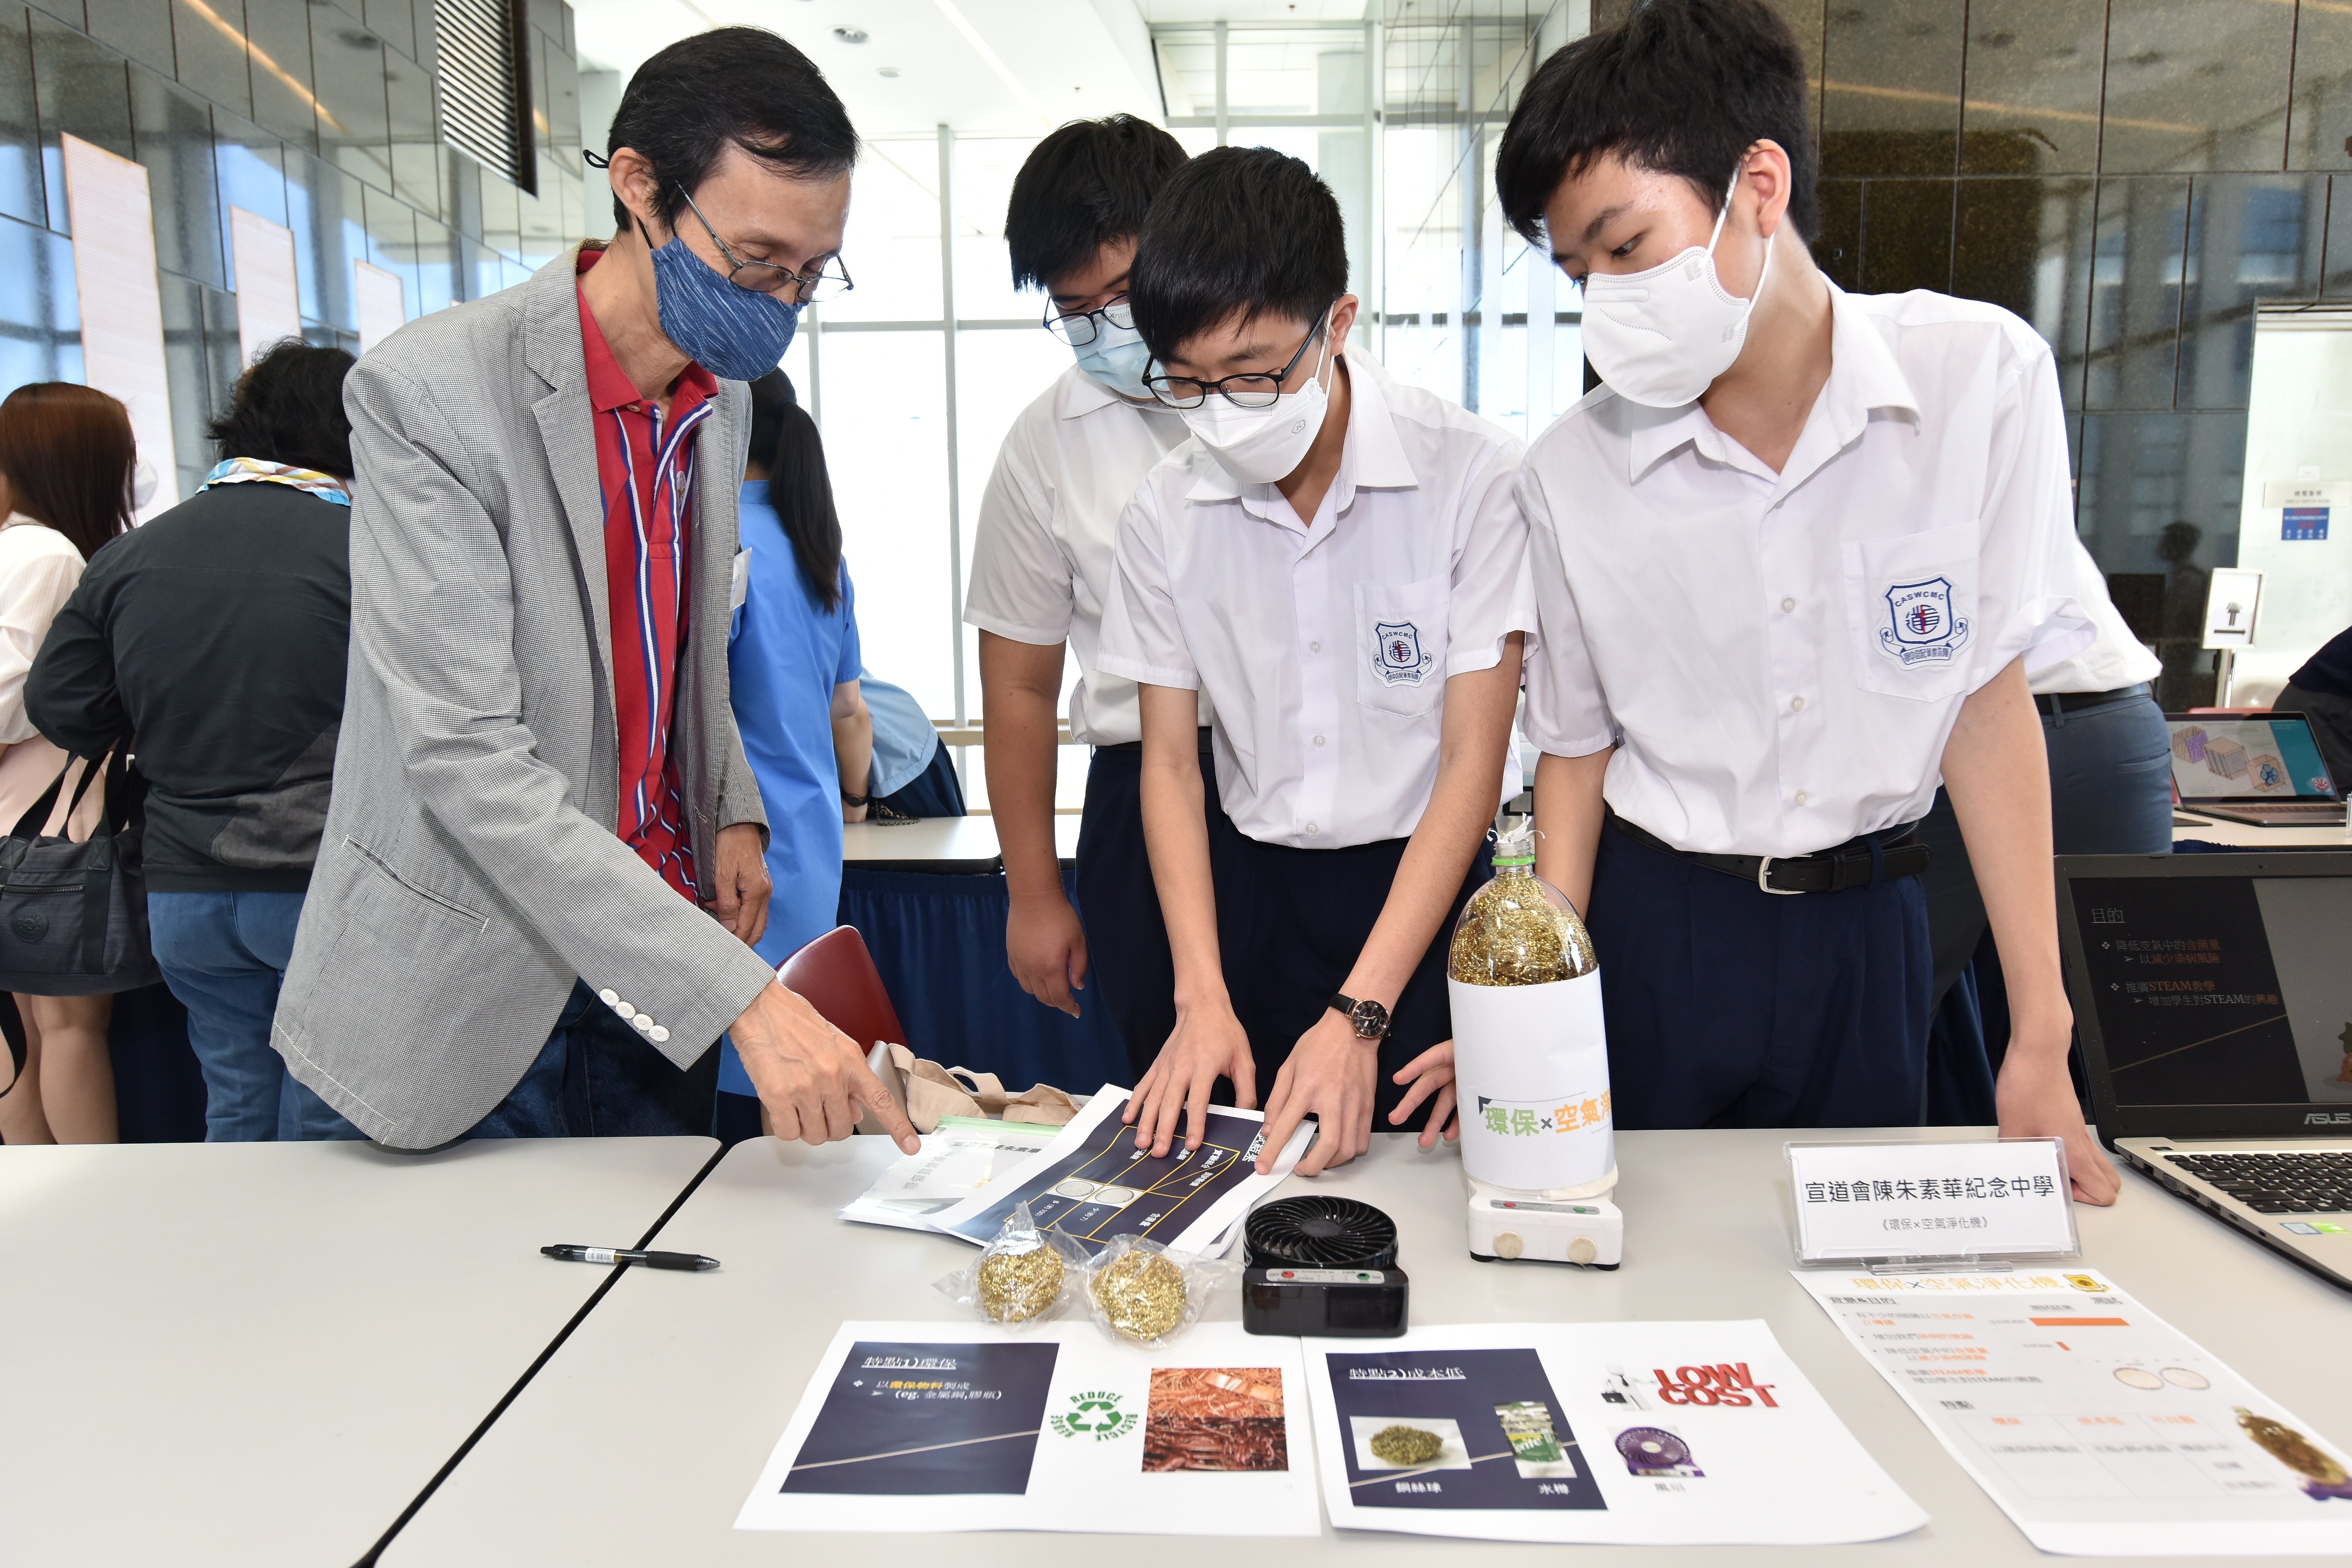 一眾嘉賓參觀學校展覽攤位，了解同學們各項作品的創作點子及對香港空氣污染的見解。